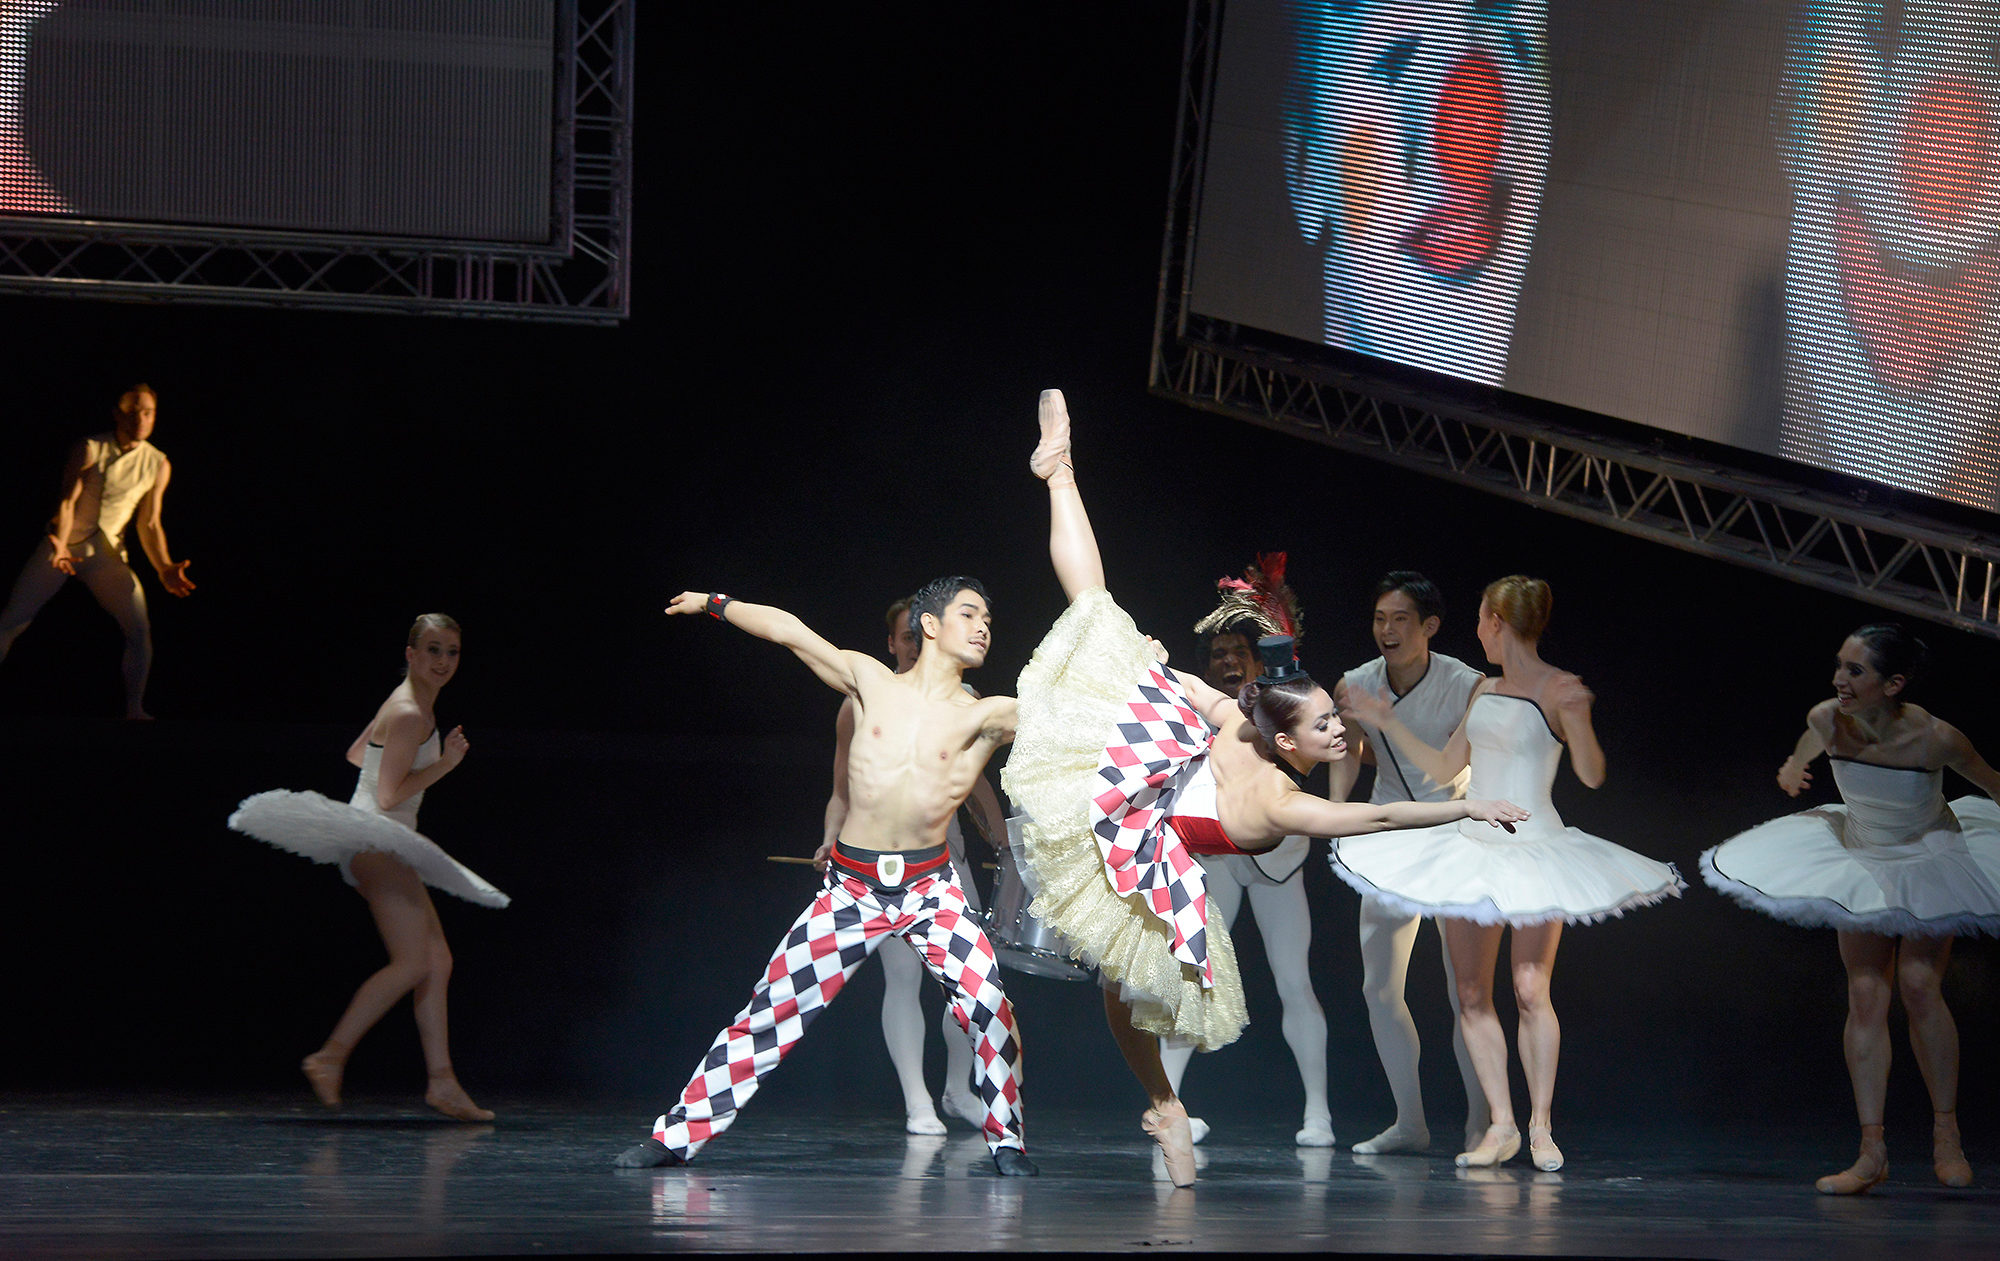 Wataru Shimizu und Yanelis Rodriguez als Circus couple, Ensemble in "Tyll" - Teil des Ballettabends "3 BY EKMAN" mit Werken von Alexander Ekman_AALTO BALLETT ESSEN / Foto @ Bettina Stöß